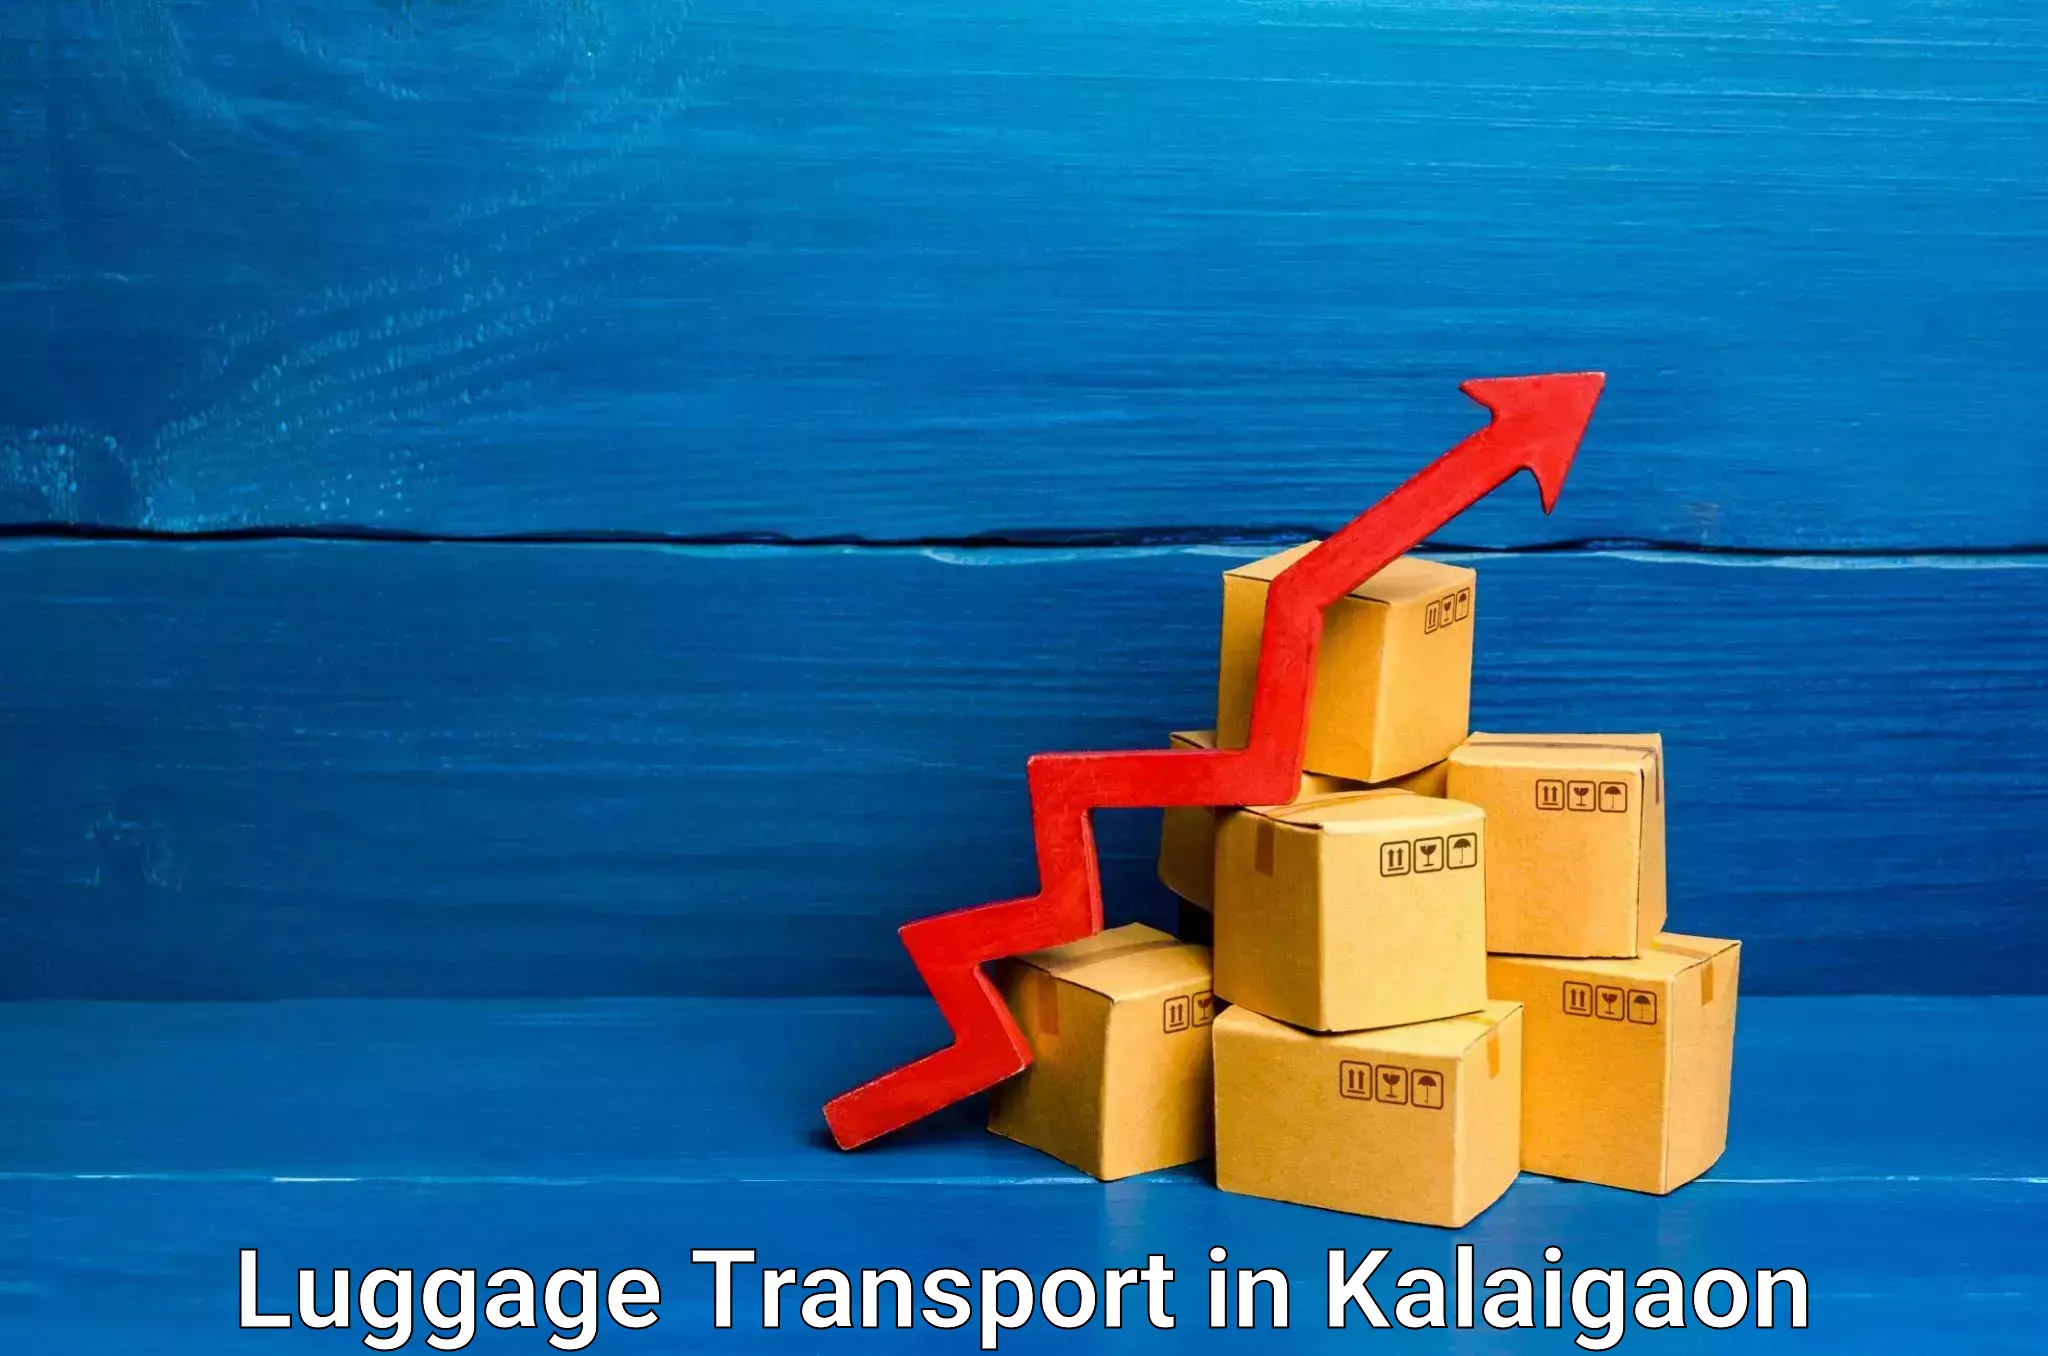 Baggage transport scheduler in Kalaigaon